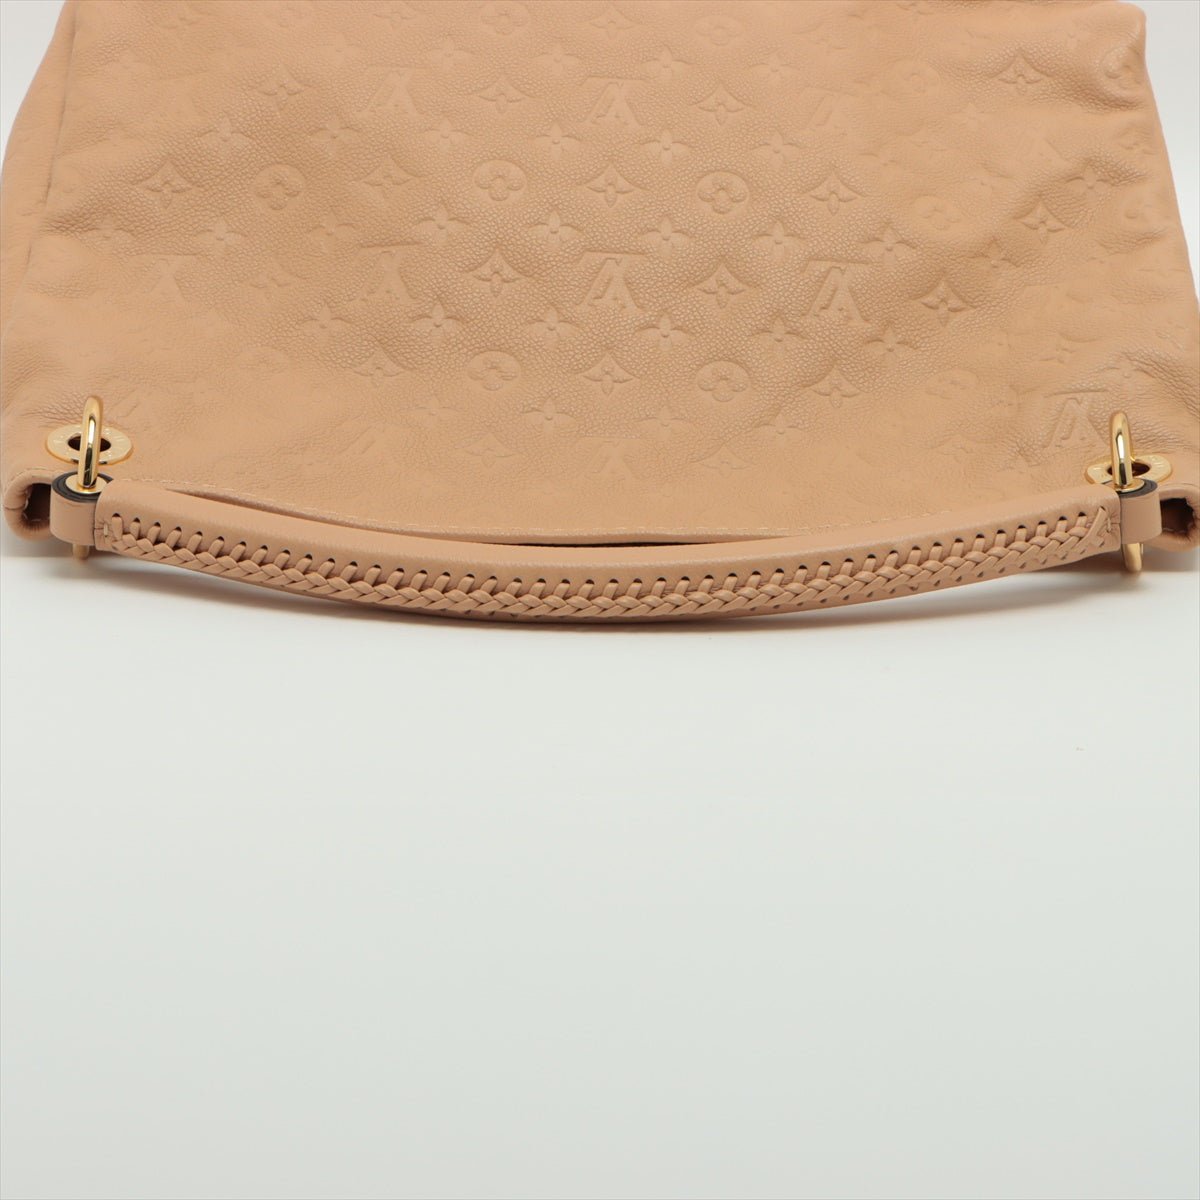 Louis Vuitton Monogram Empreinte Artsy MM M41182 Beige Leather